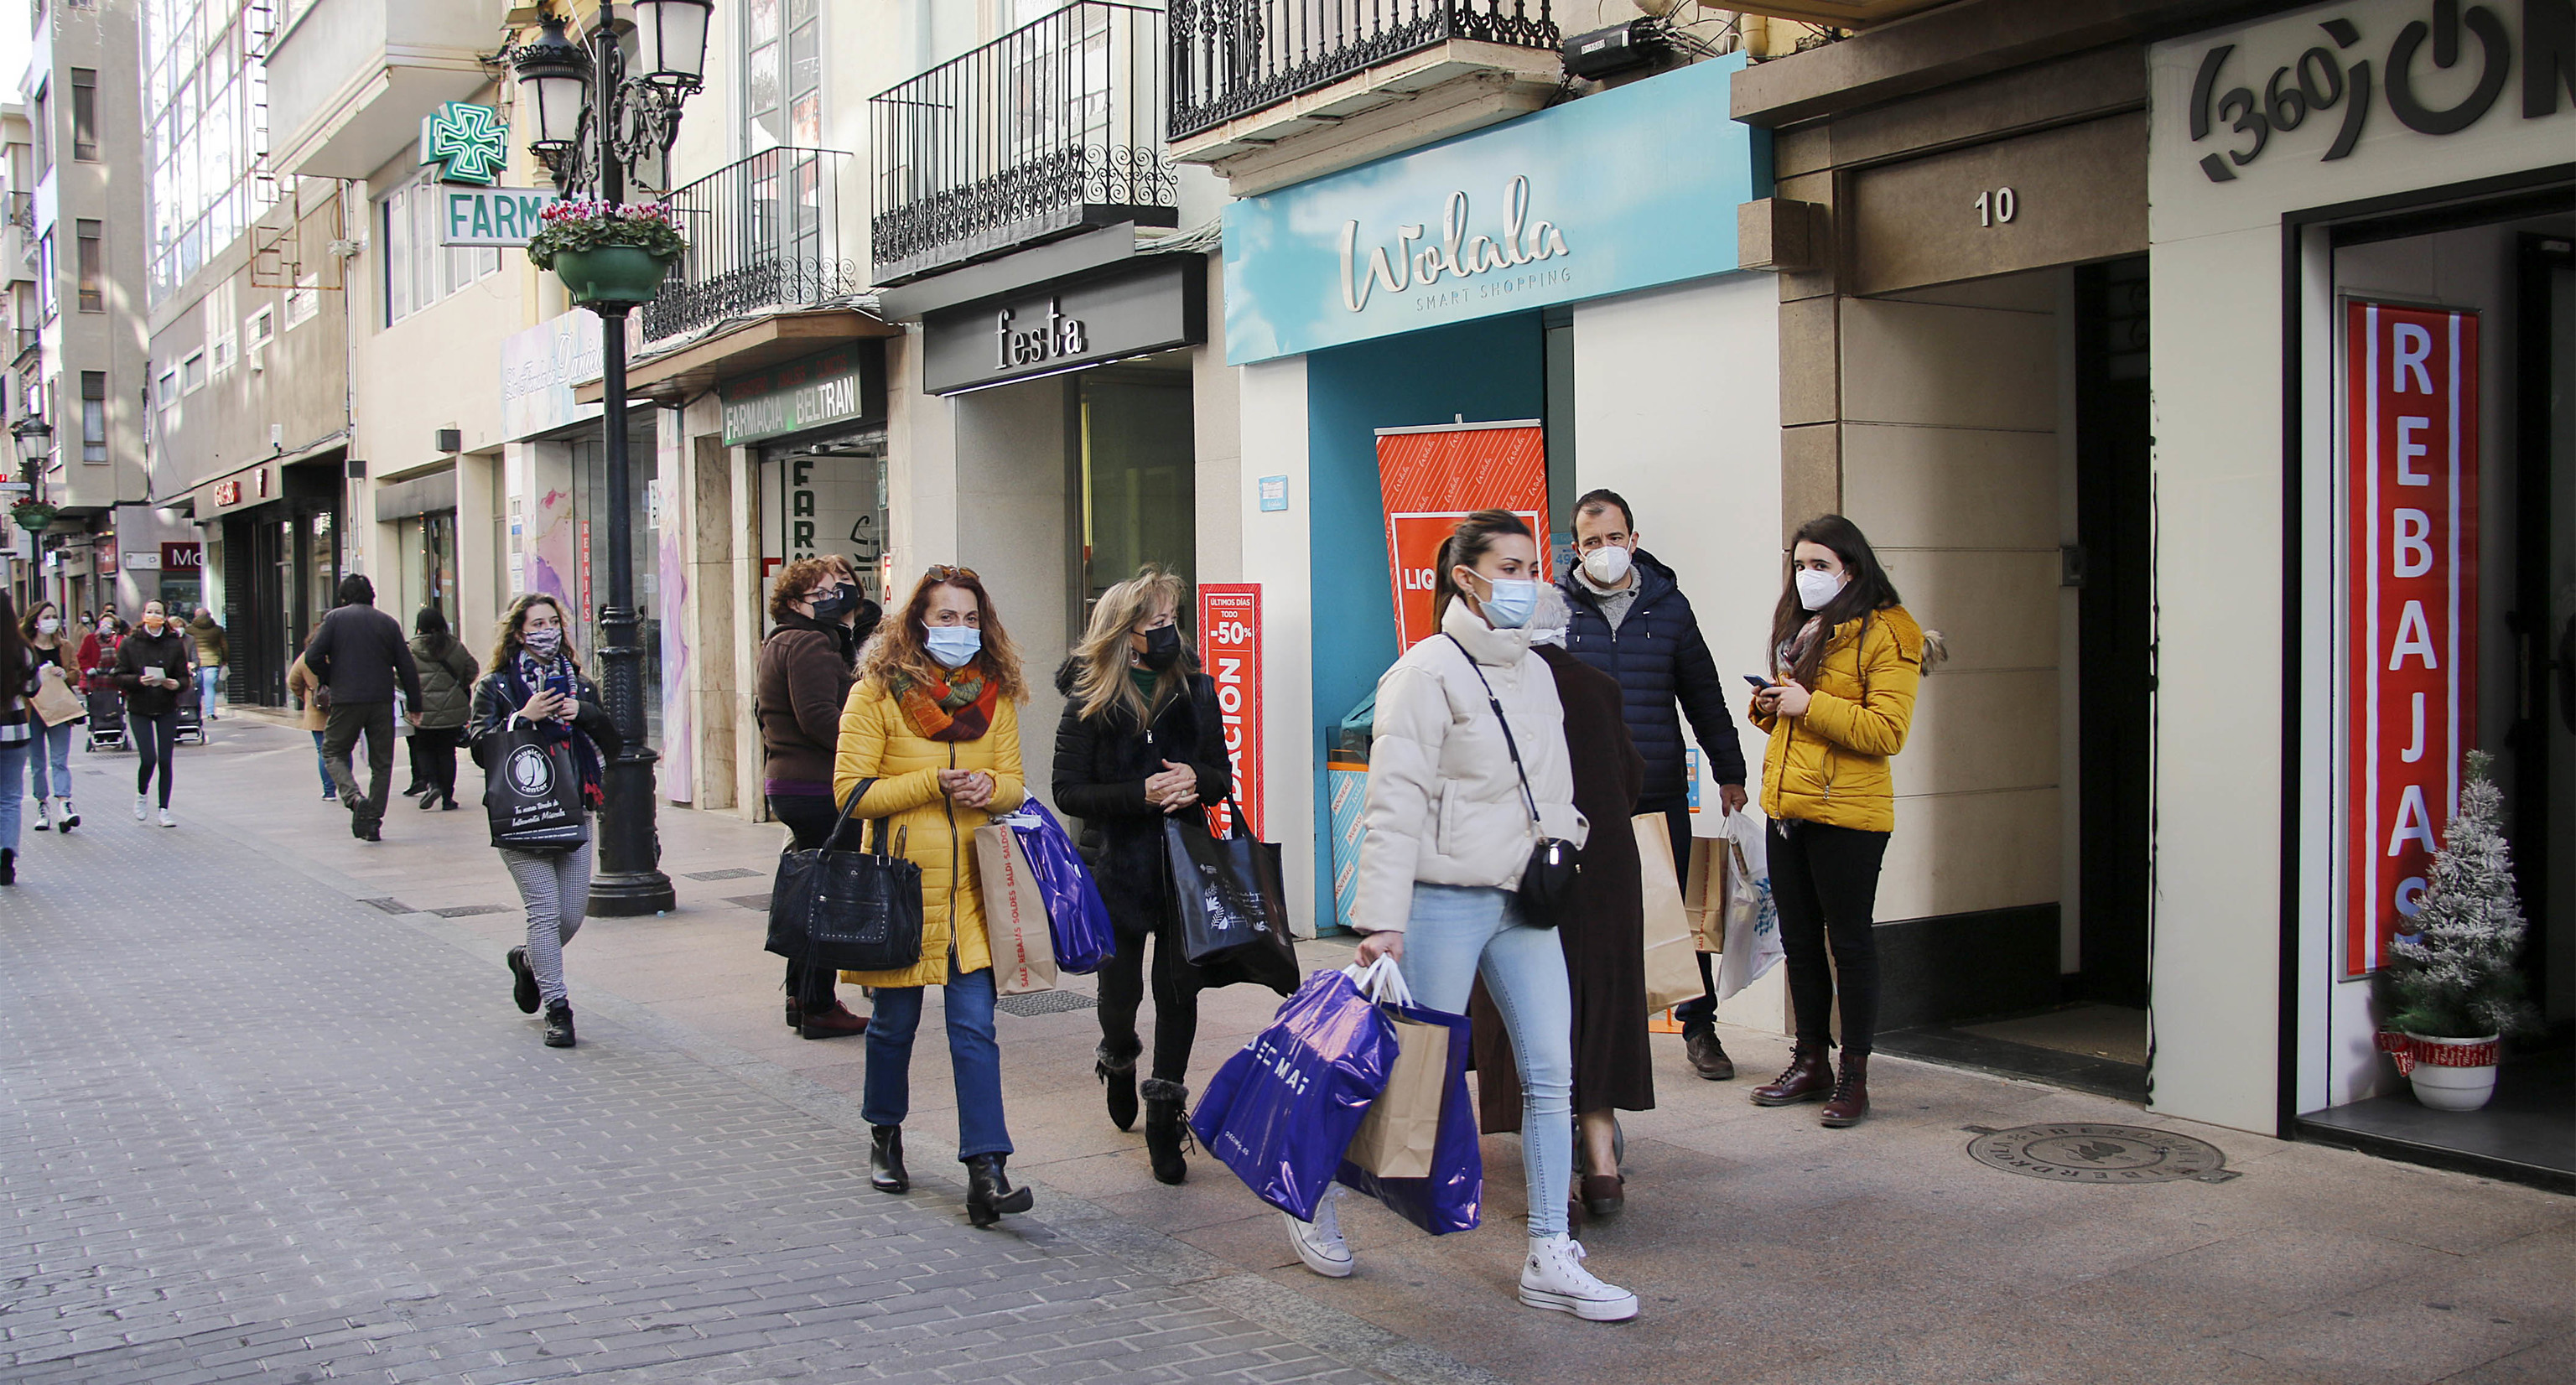 Imagen de establecimientos comerciales del centro de Castellón.